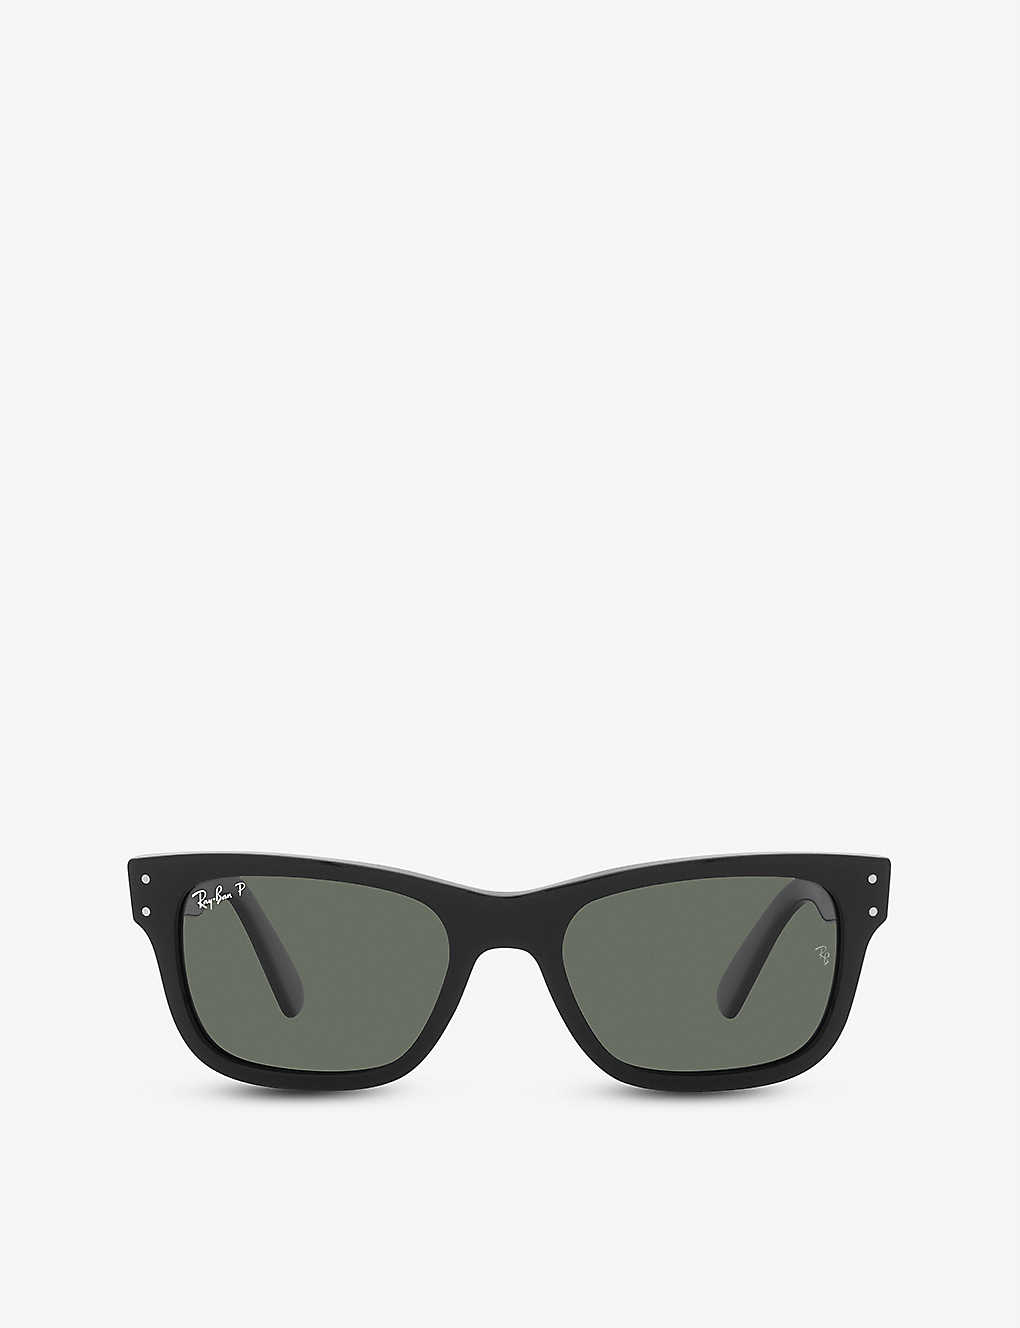 RB2283 Mr Burbank square acetate sunglasses